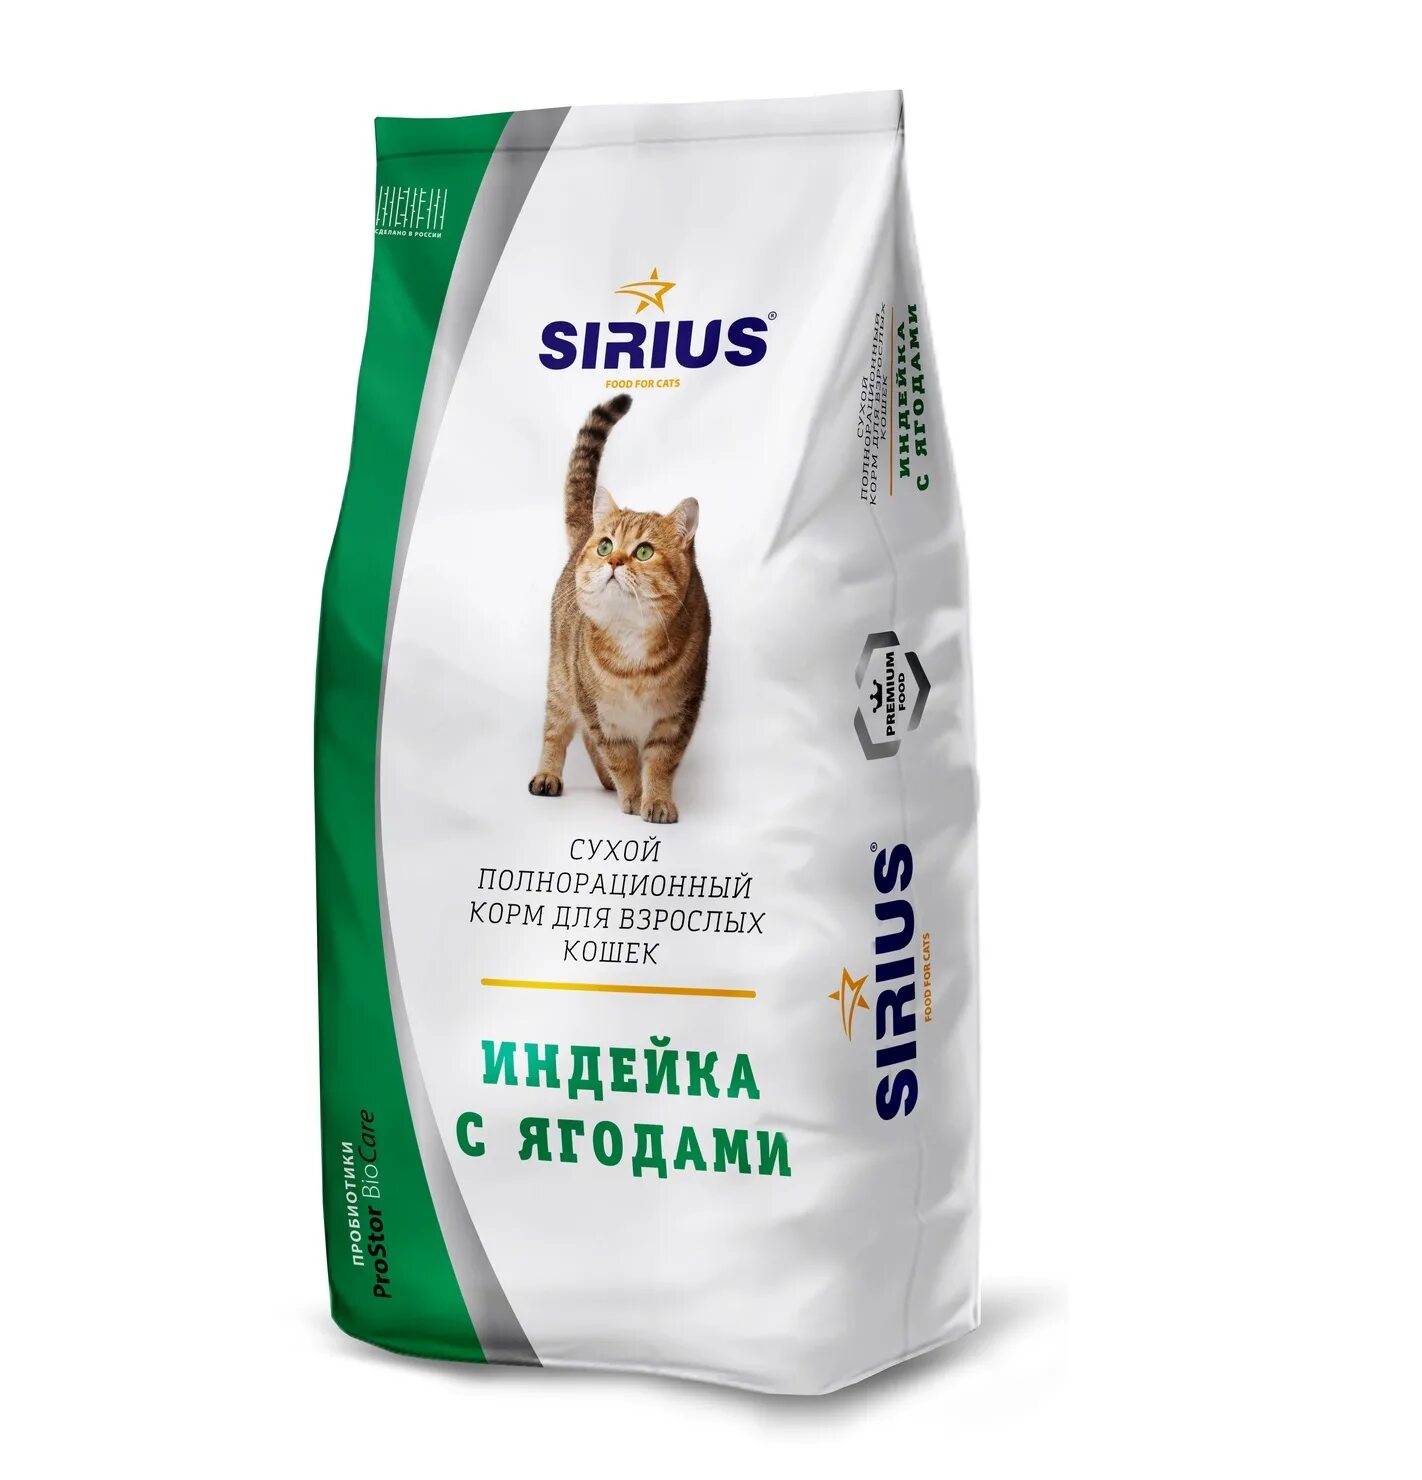 Сириус корм для кошек 10 кг. Корм Сириус для котят с индейкой. Линейка кормов Сириус для кошек. Корм для кошек сухой премиум Сириус. Сириус для кошек 10 кг купить